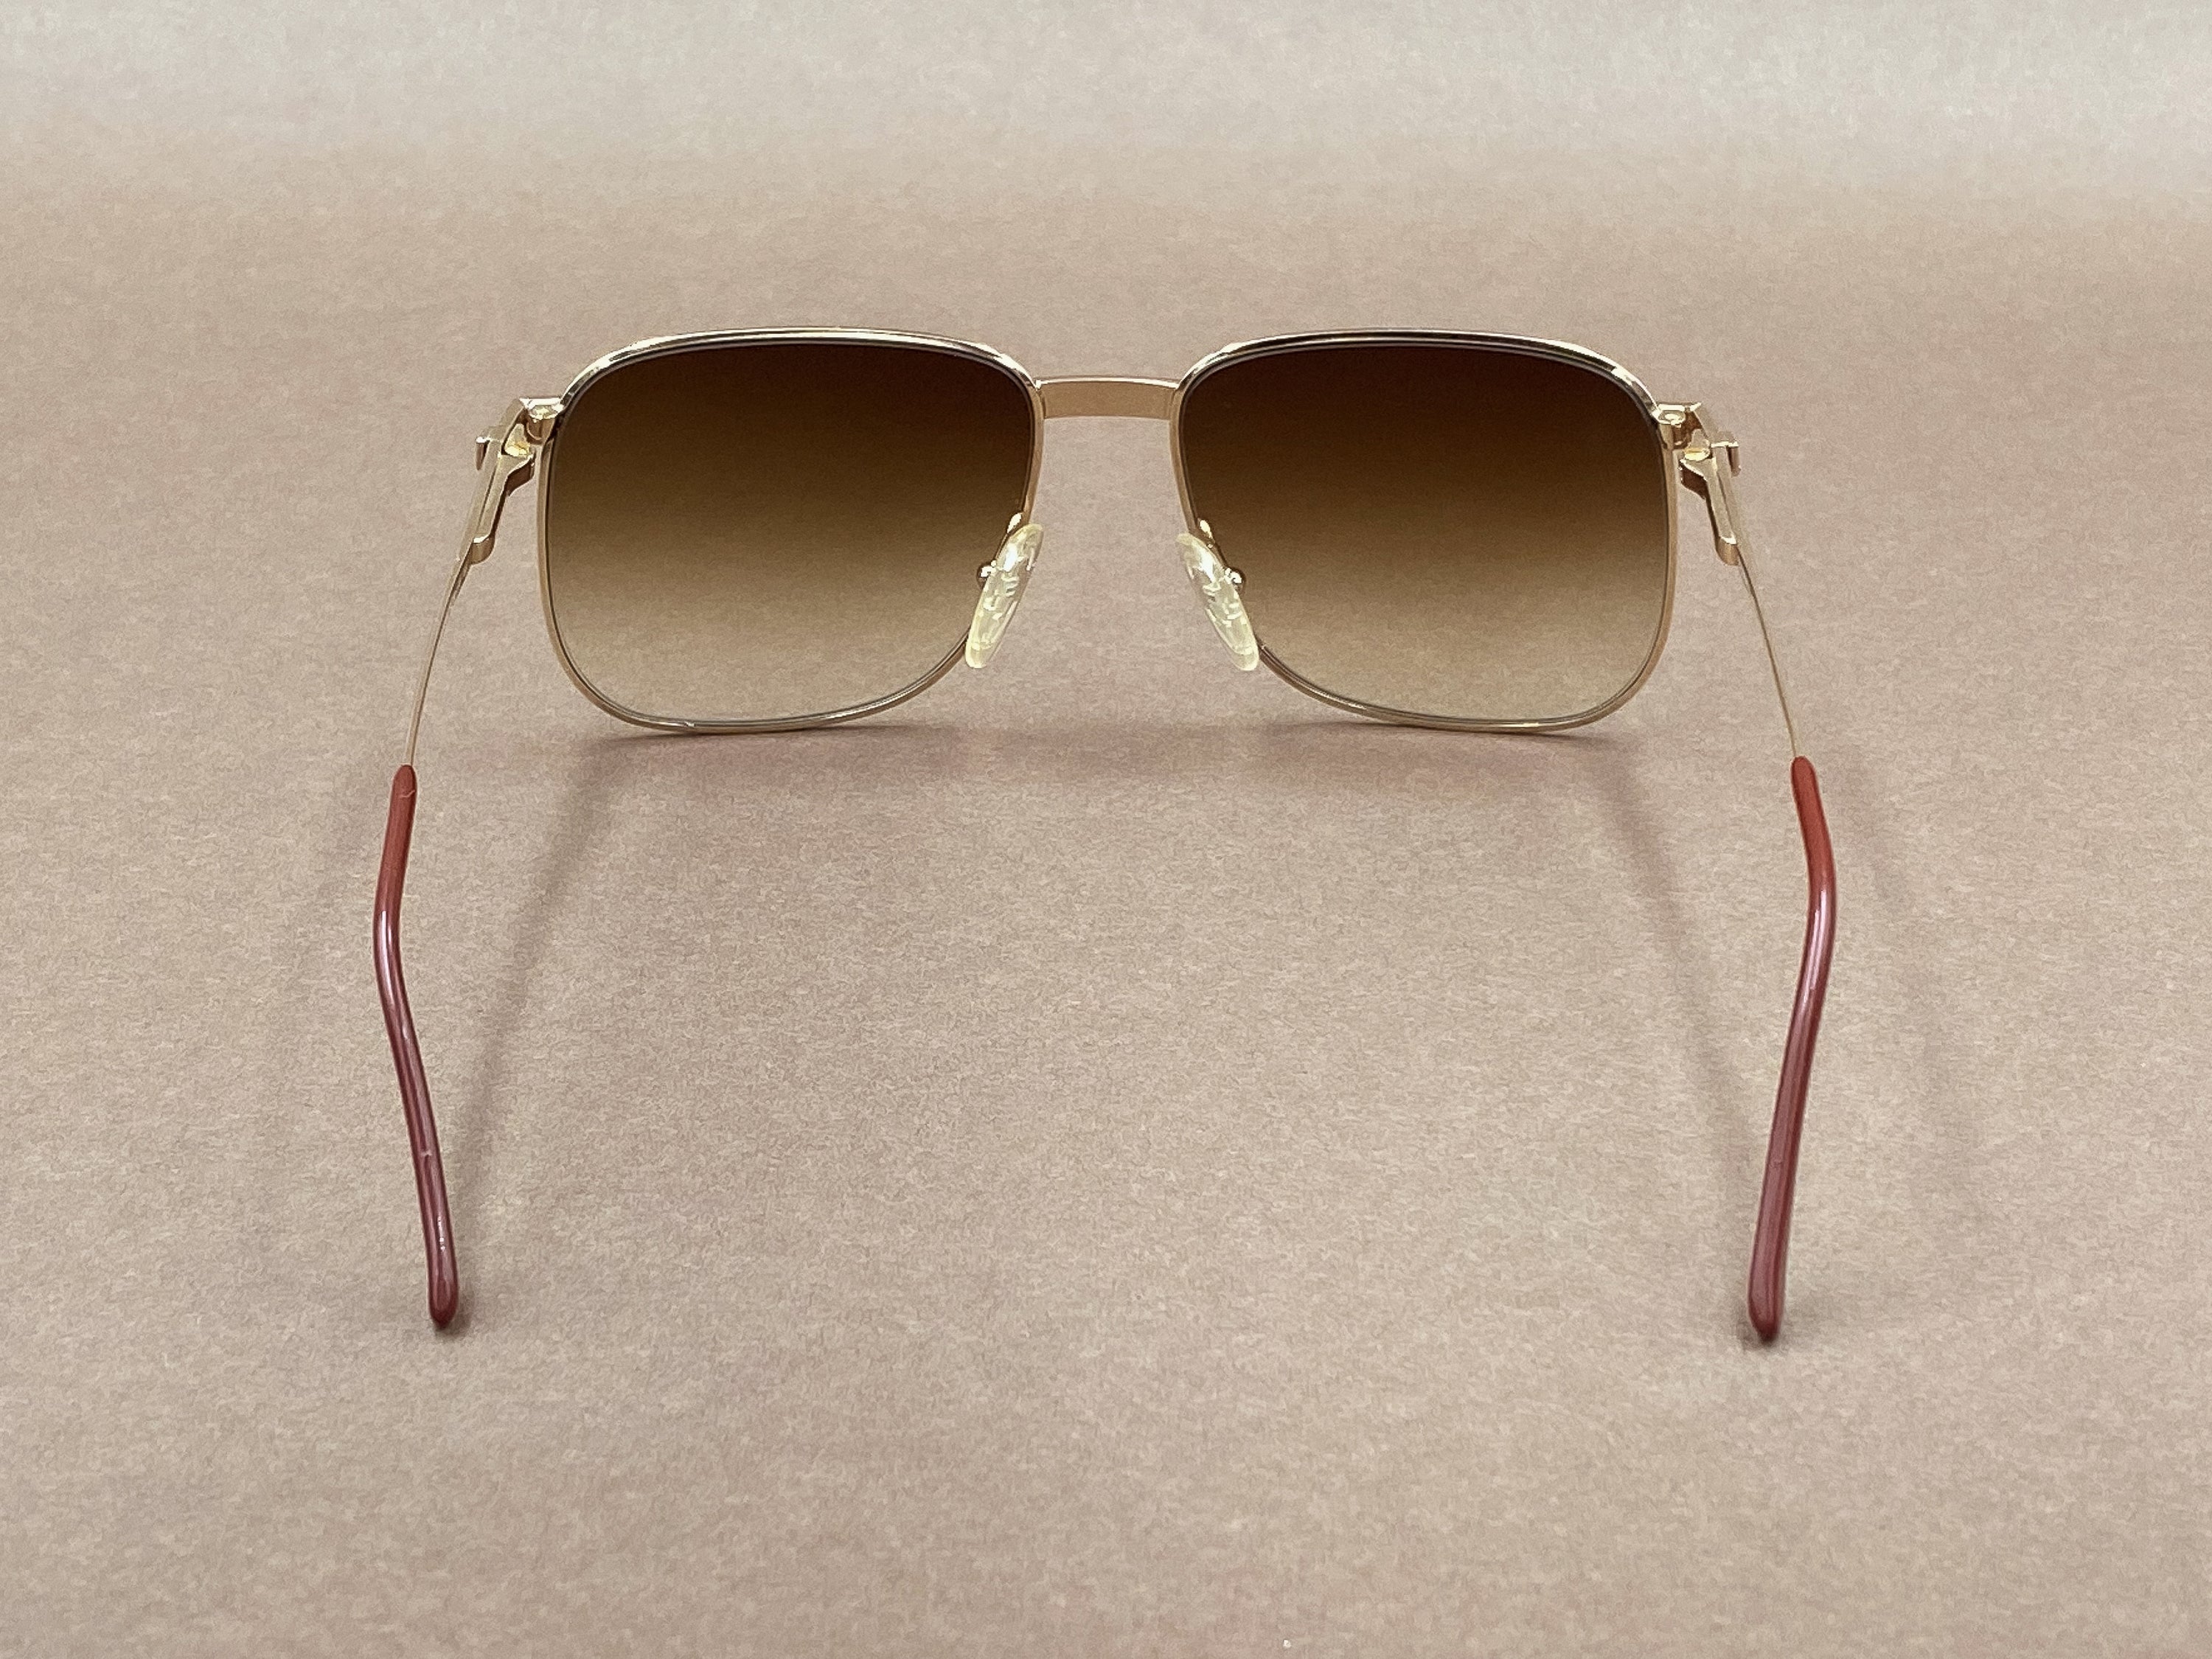 Missoni M408 sunglasses